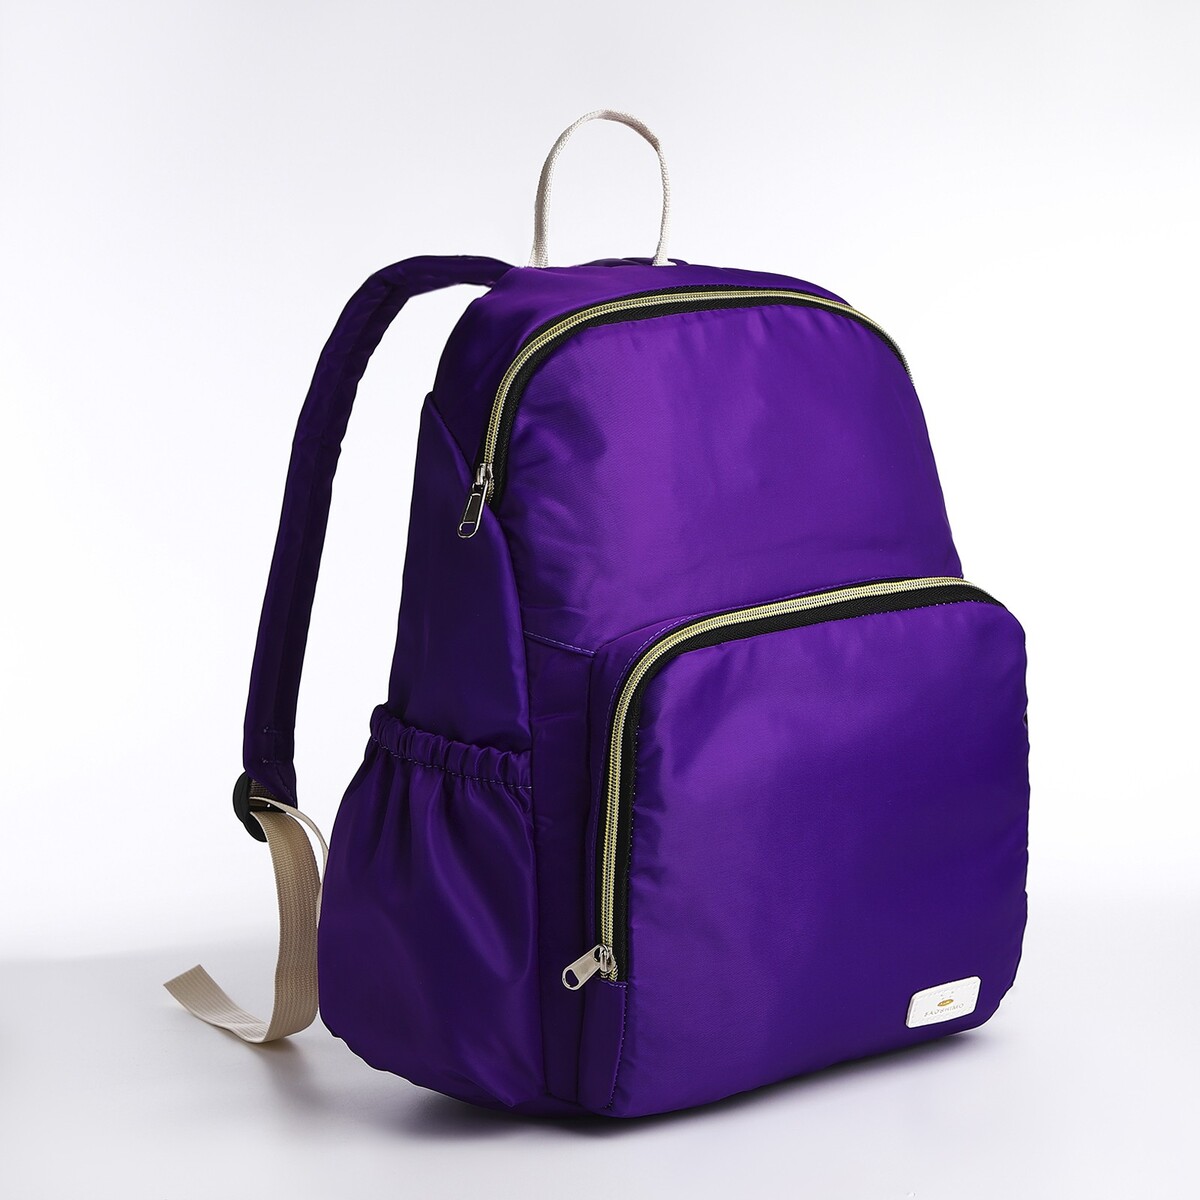 Рюкзак на молнии, цвет фиолетовый рюкзак kingkong i 10 wb 9062 черн средний фоторюкзак